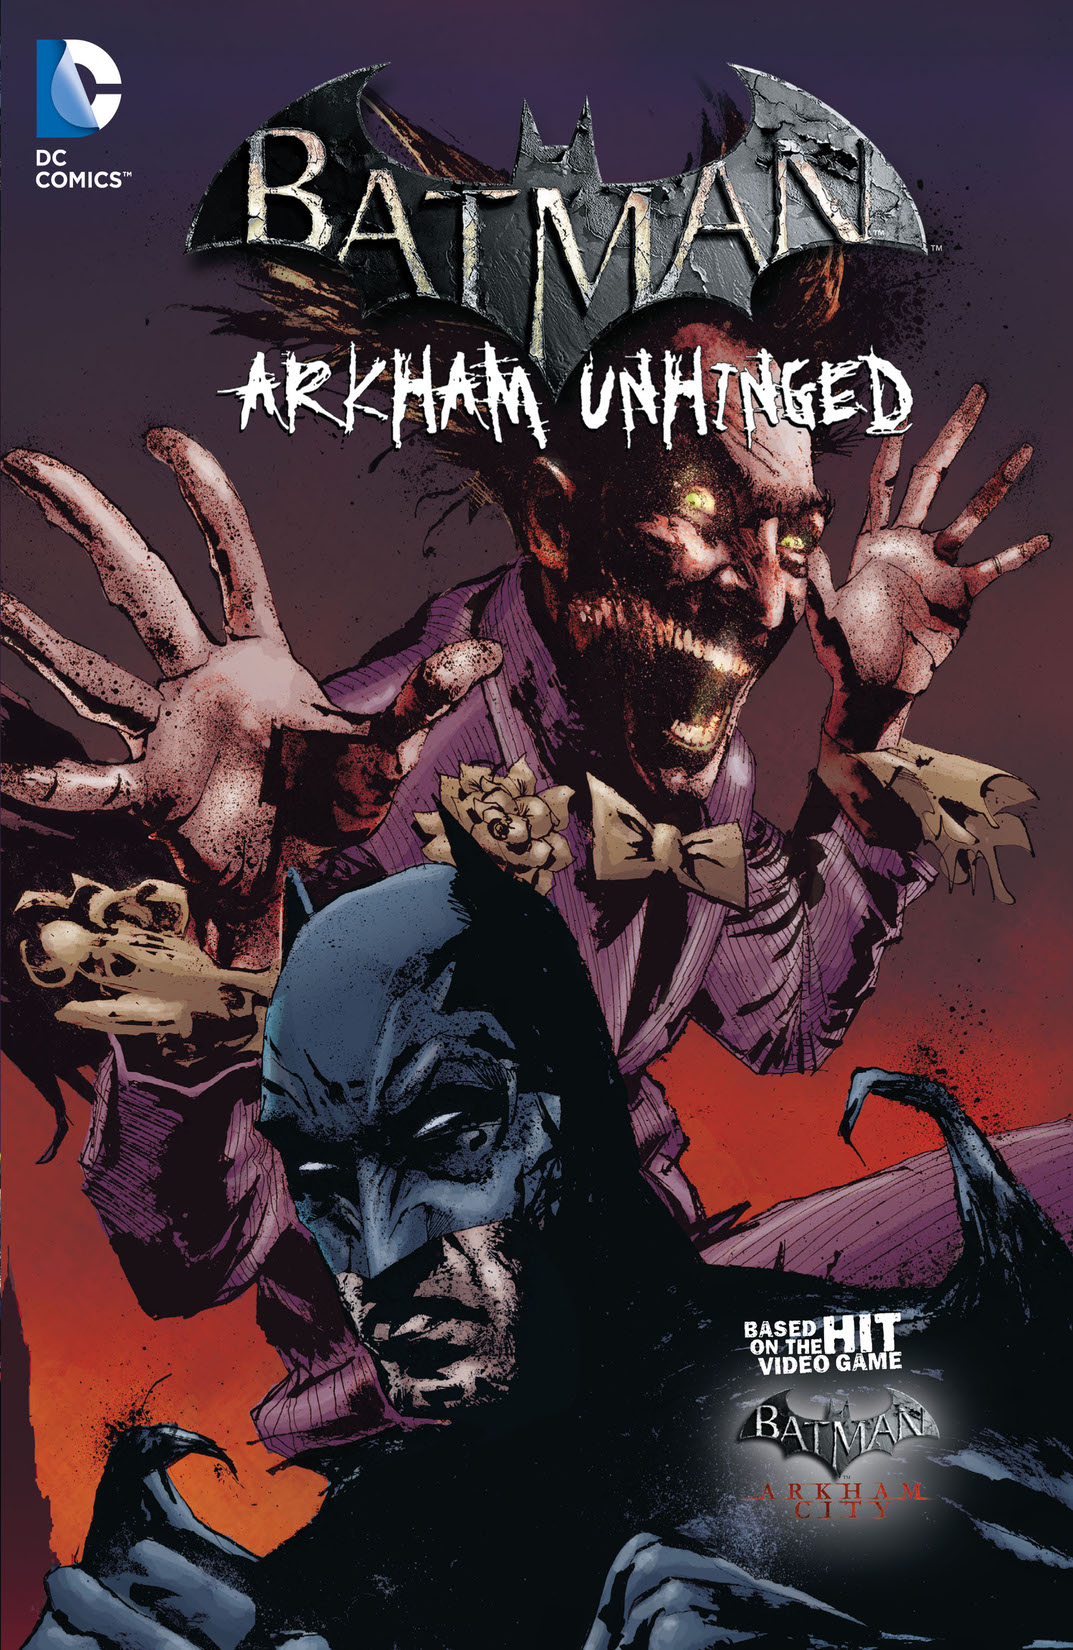 Batman: Arkham Unhinged Vol. 3 preview images